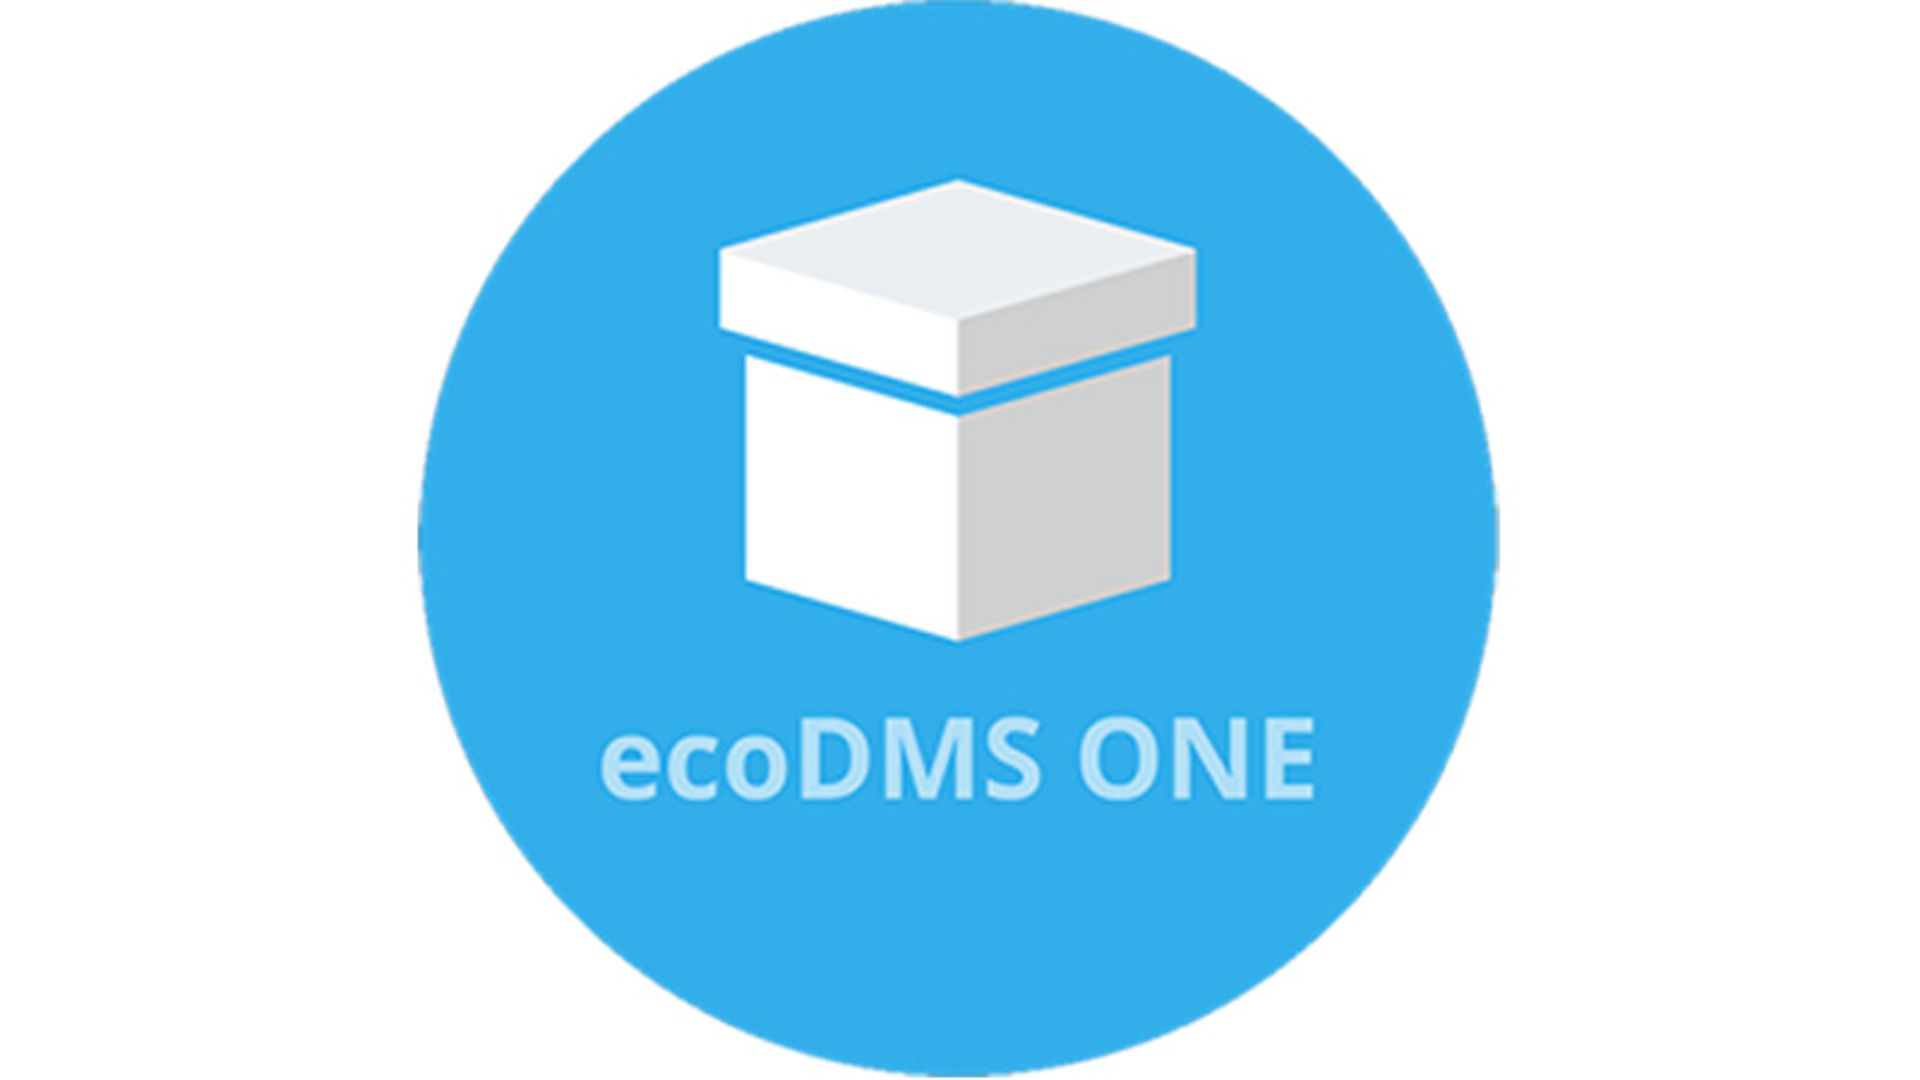 ecoDMS ONE